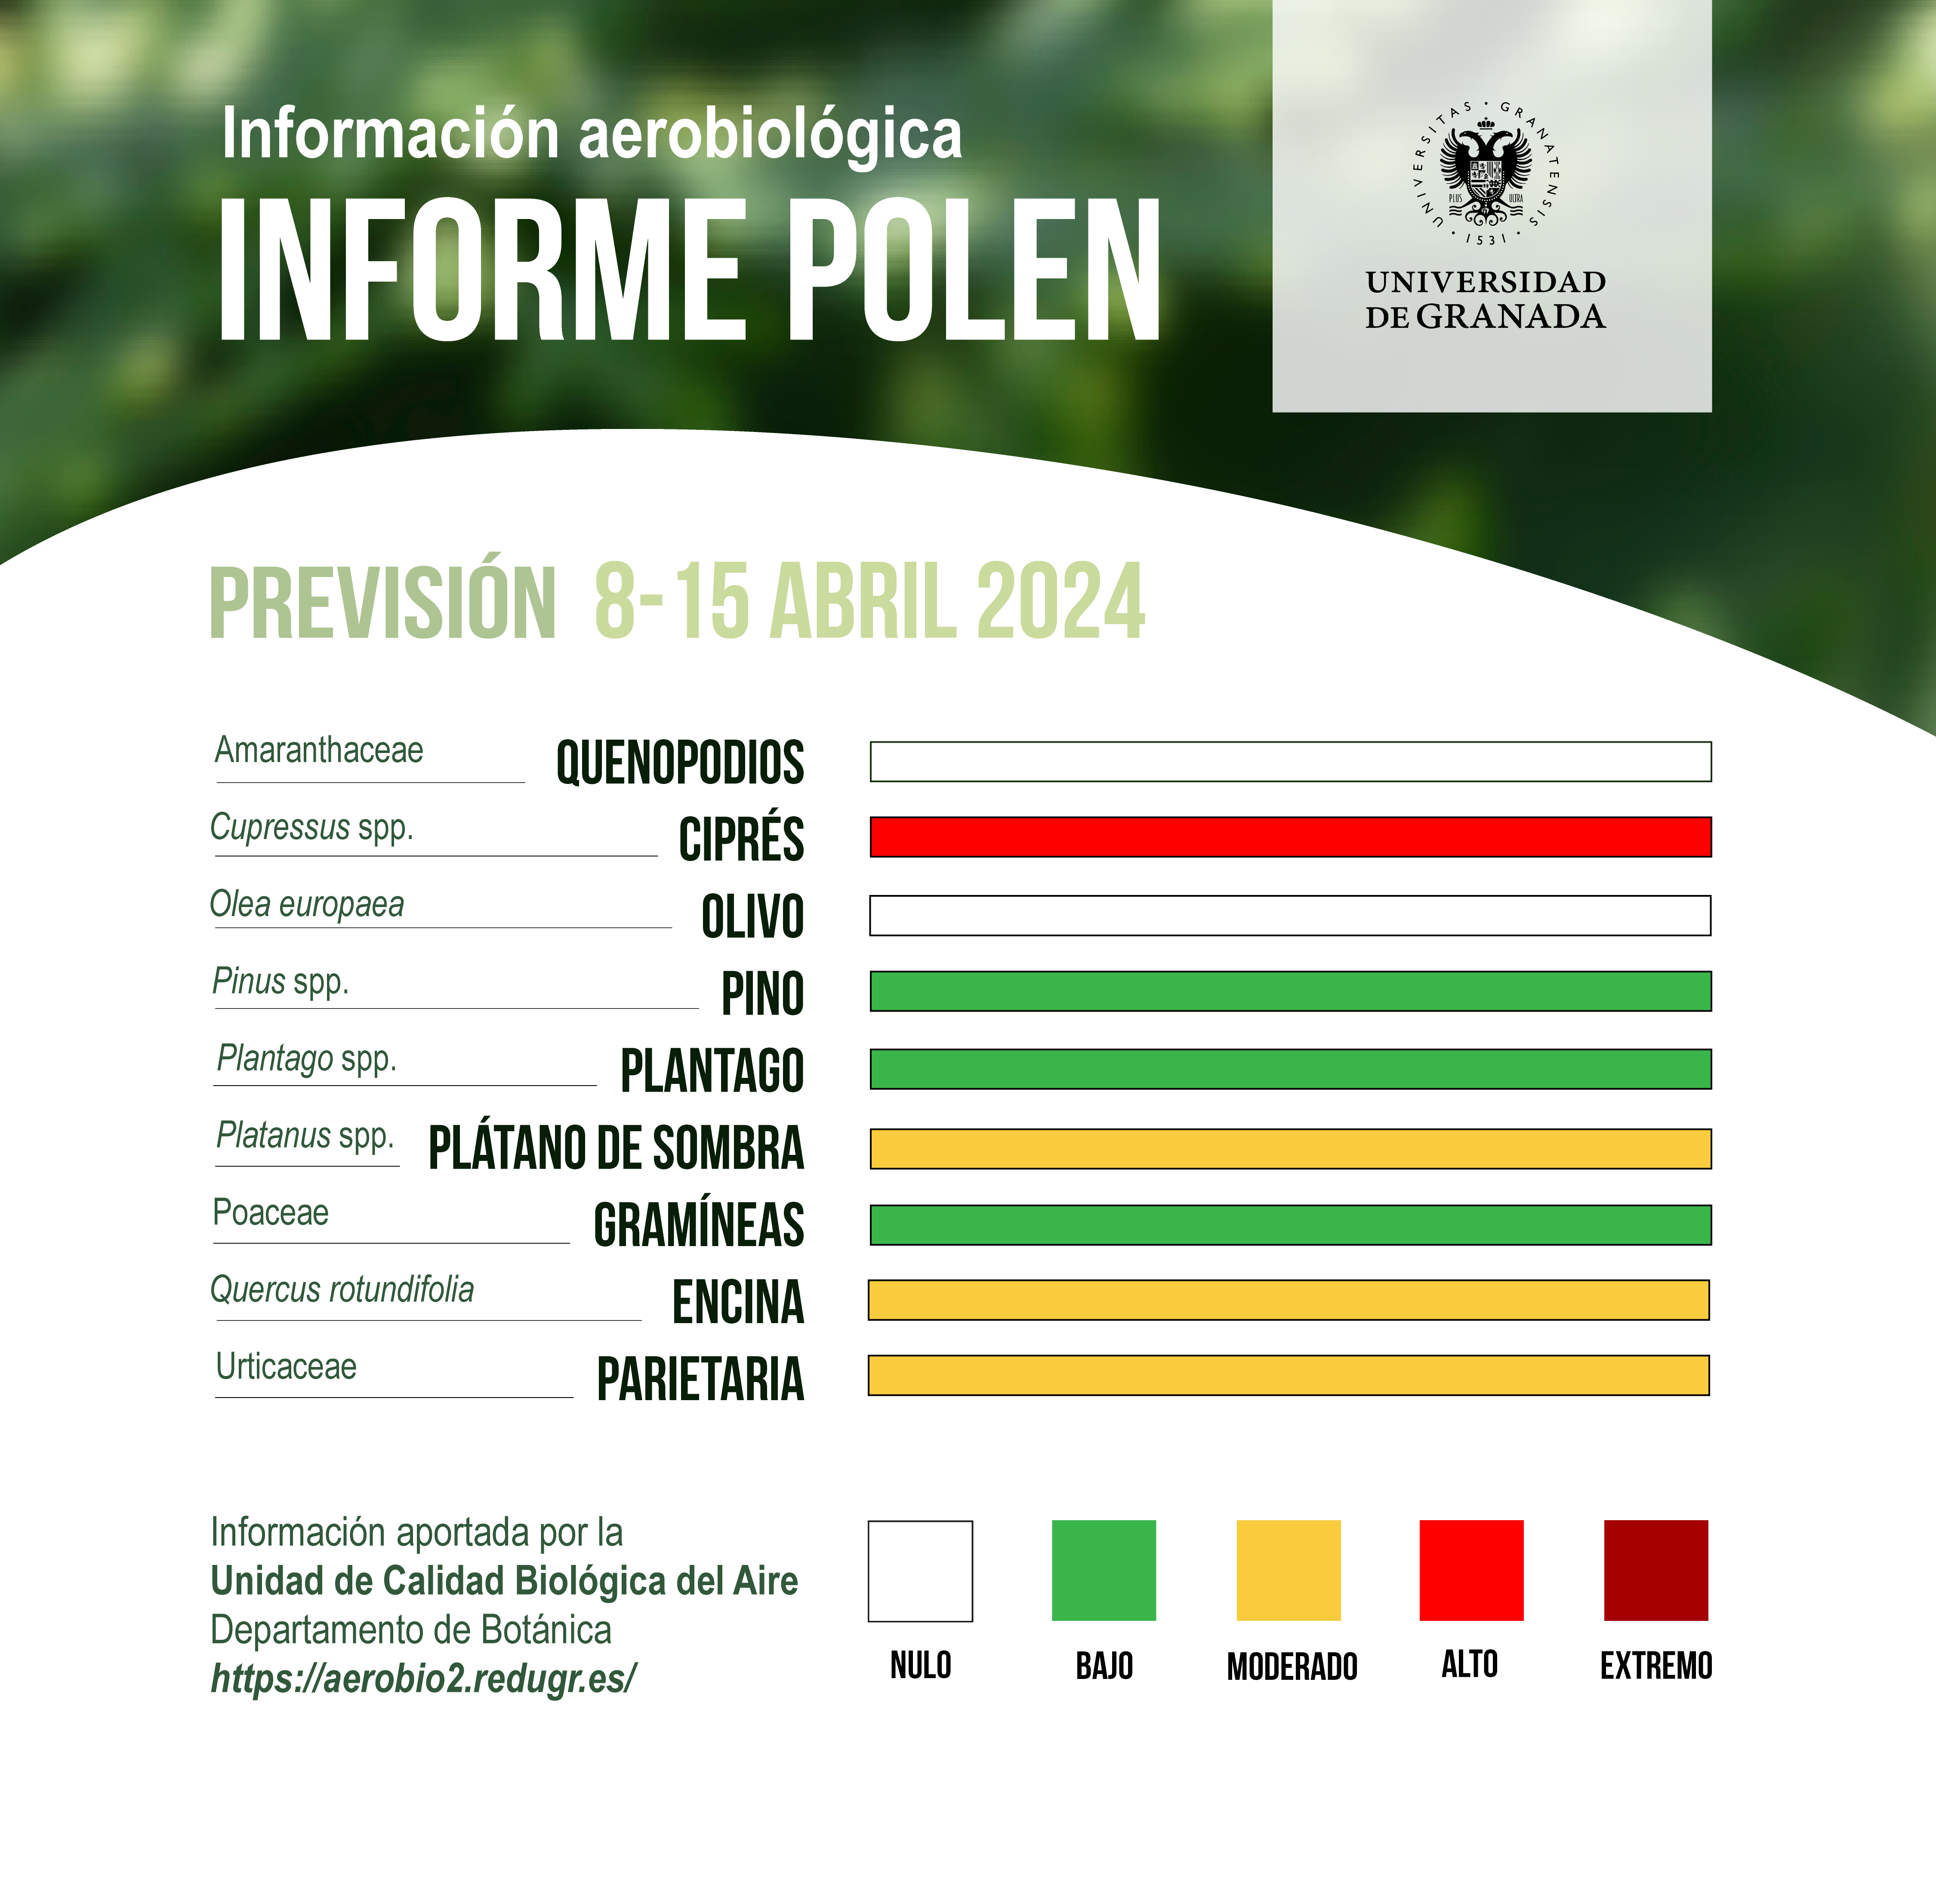 Descenso significativo de los niveles de polen en la ciudad de Granada